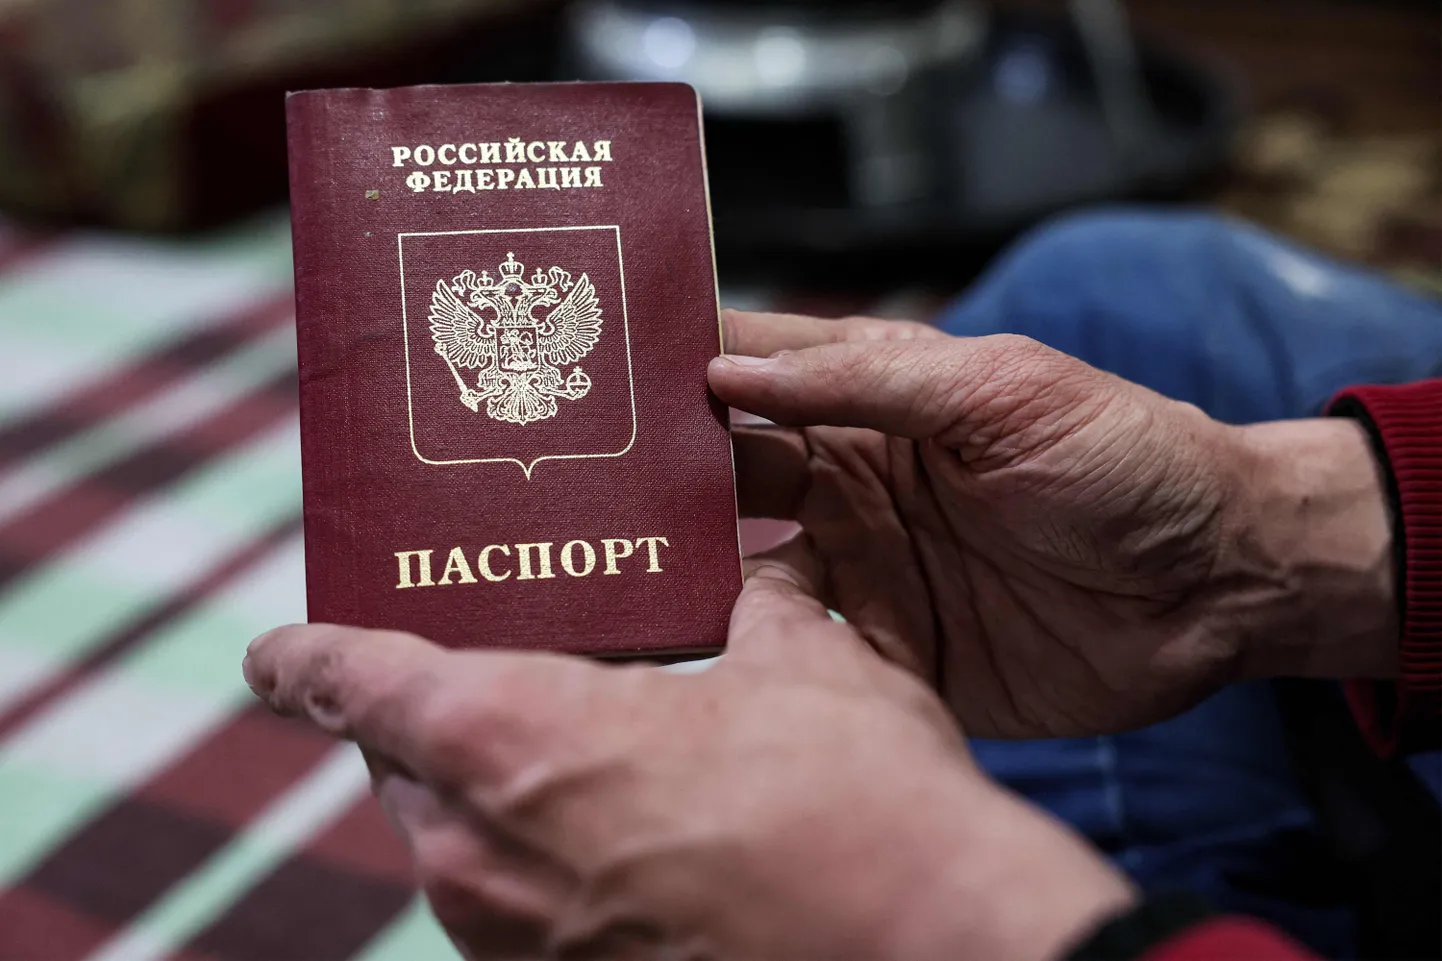 Venemaa Föderatsiooni pass.